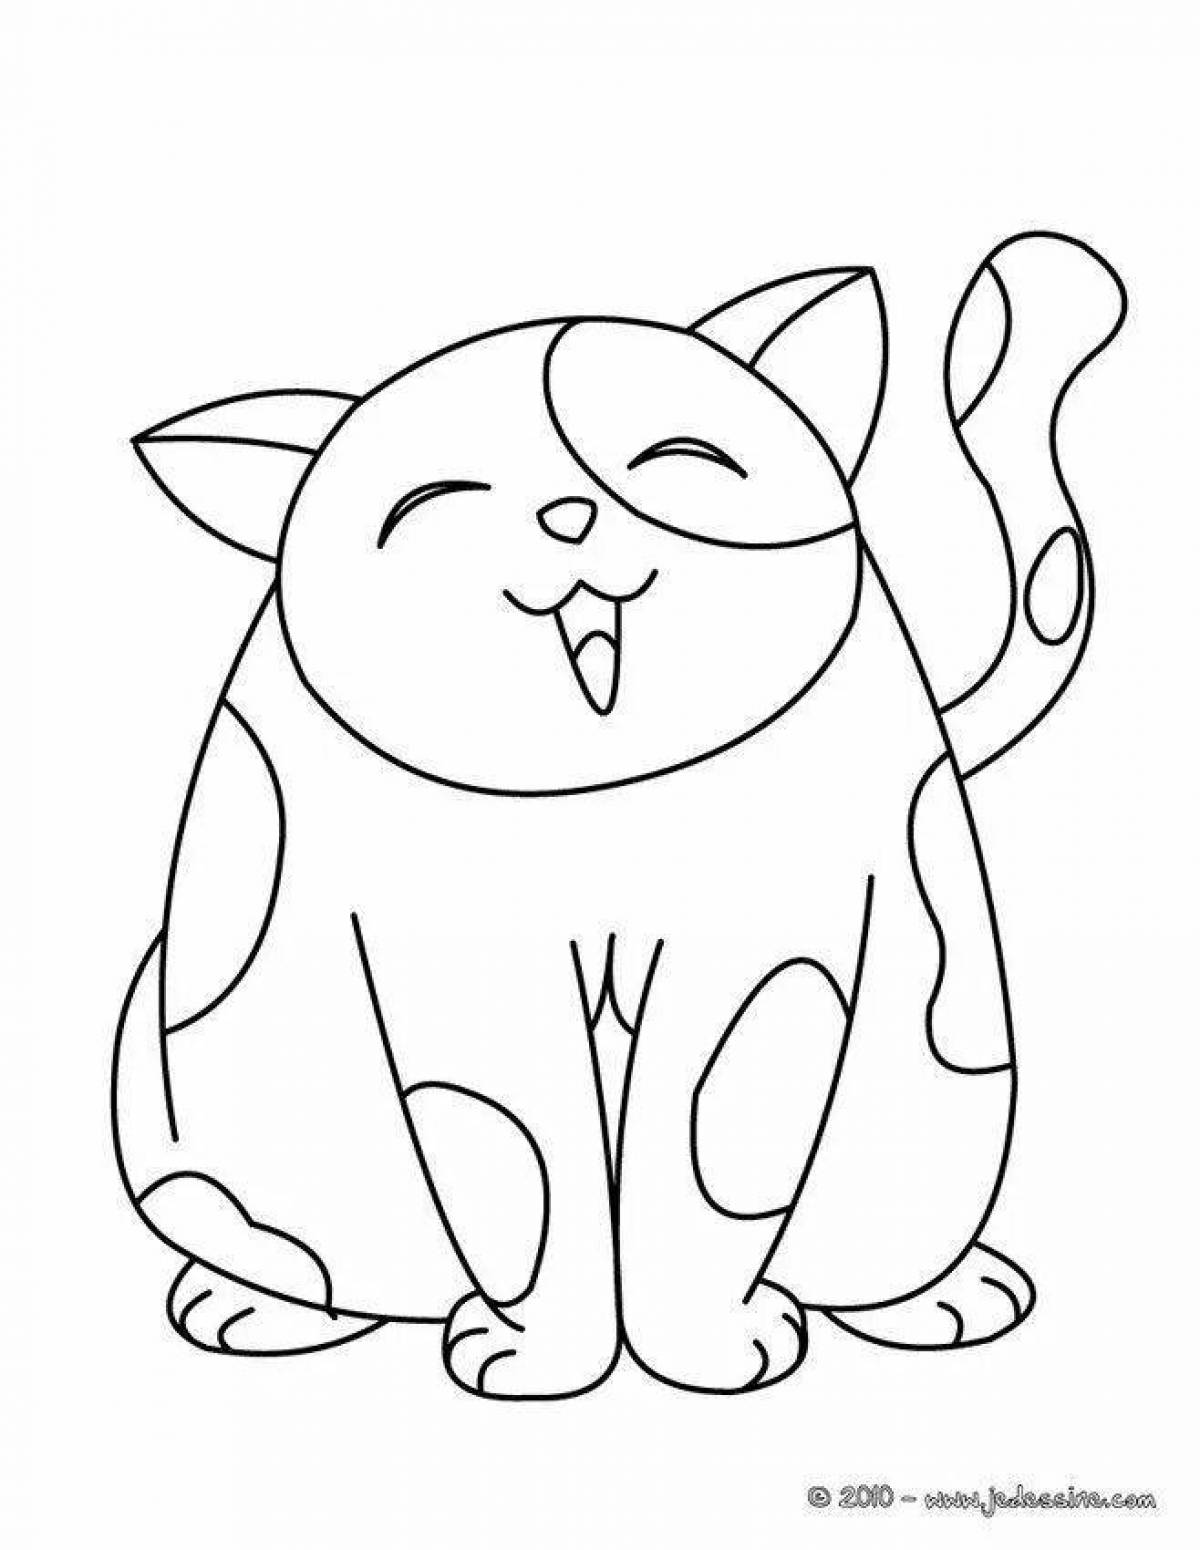 Страница раскраски толстого кота